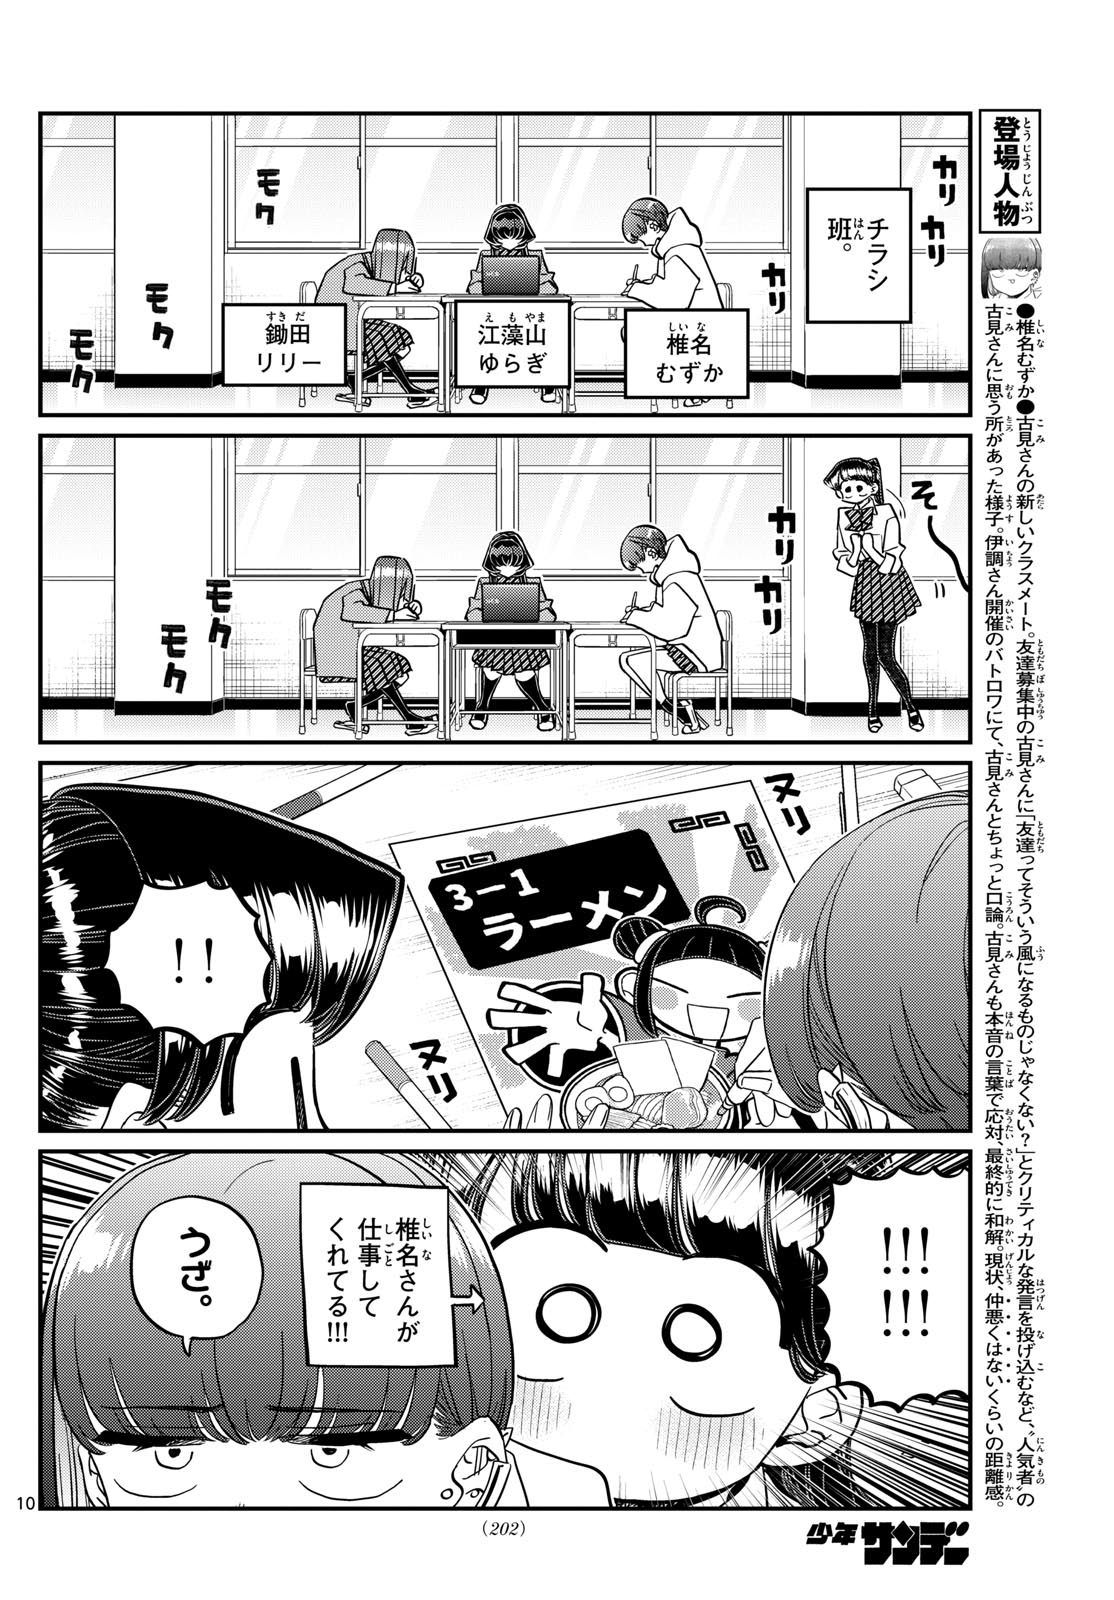 Komi-san wa Komyushou Desu - Chapter 448 - Page 10